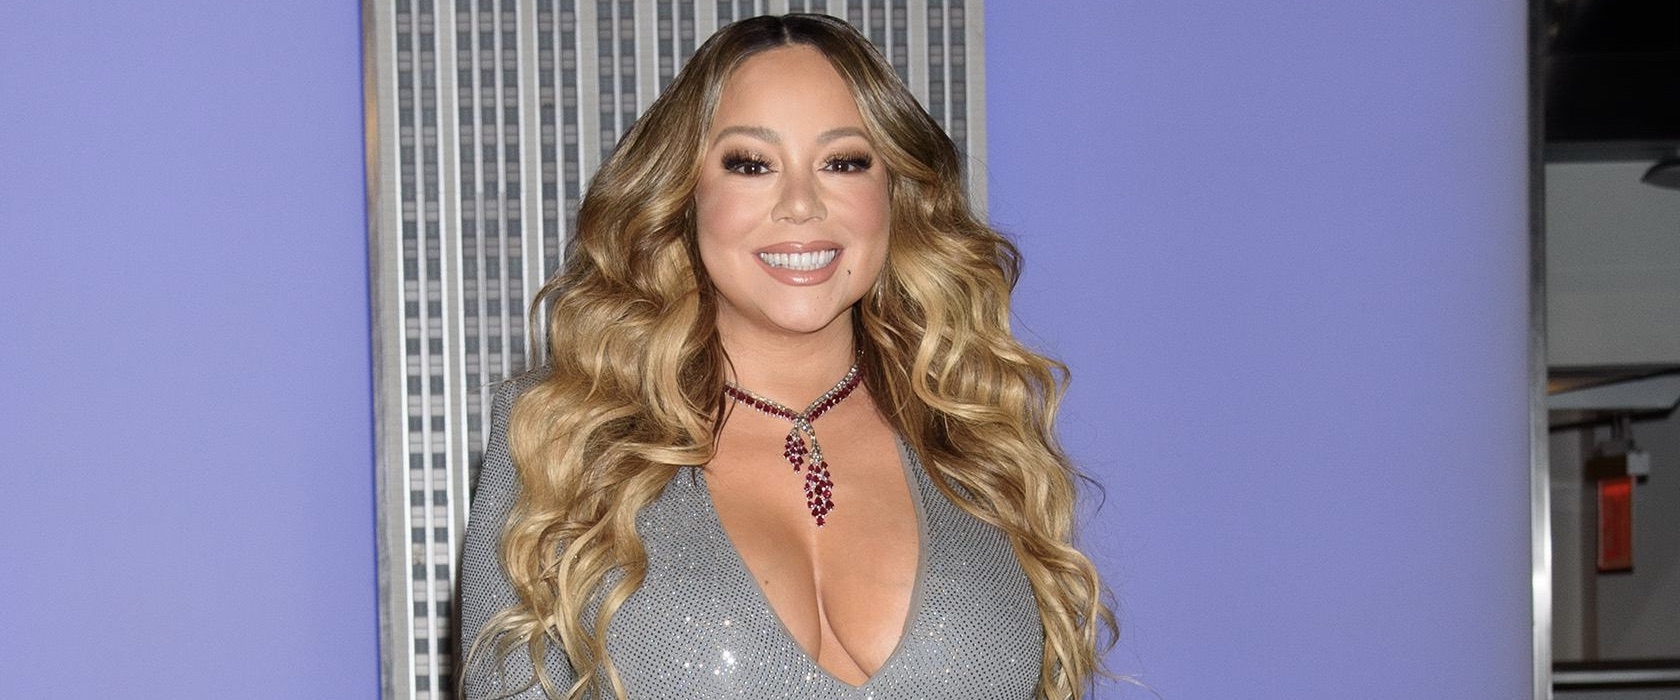 Barre kerst voor Mariah Carey: krijgt geen rechten voor titel 'kerstkoningin'